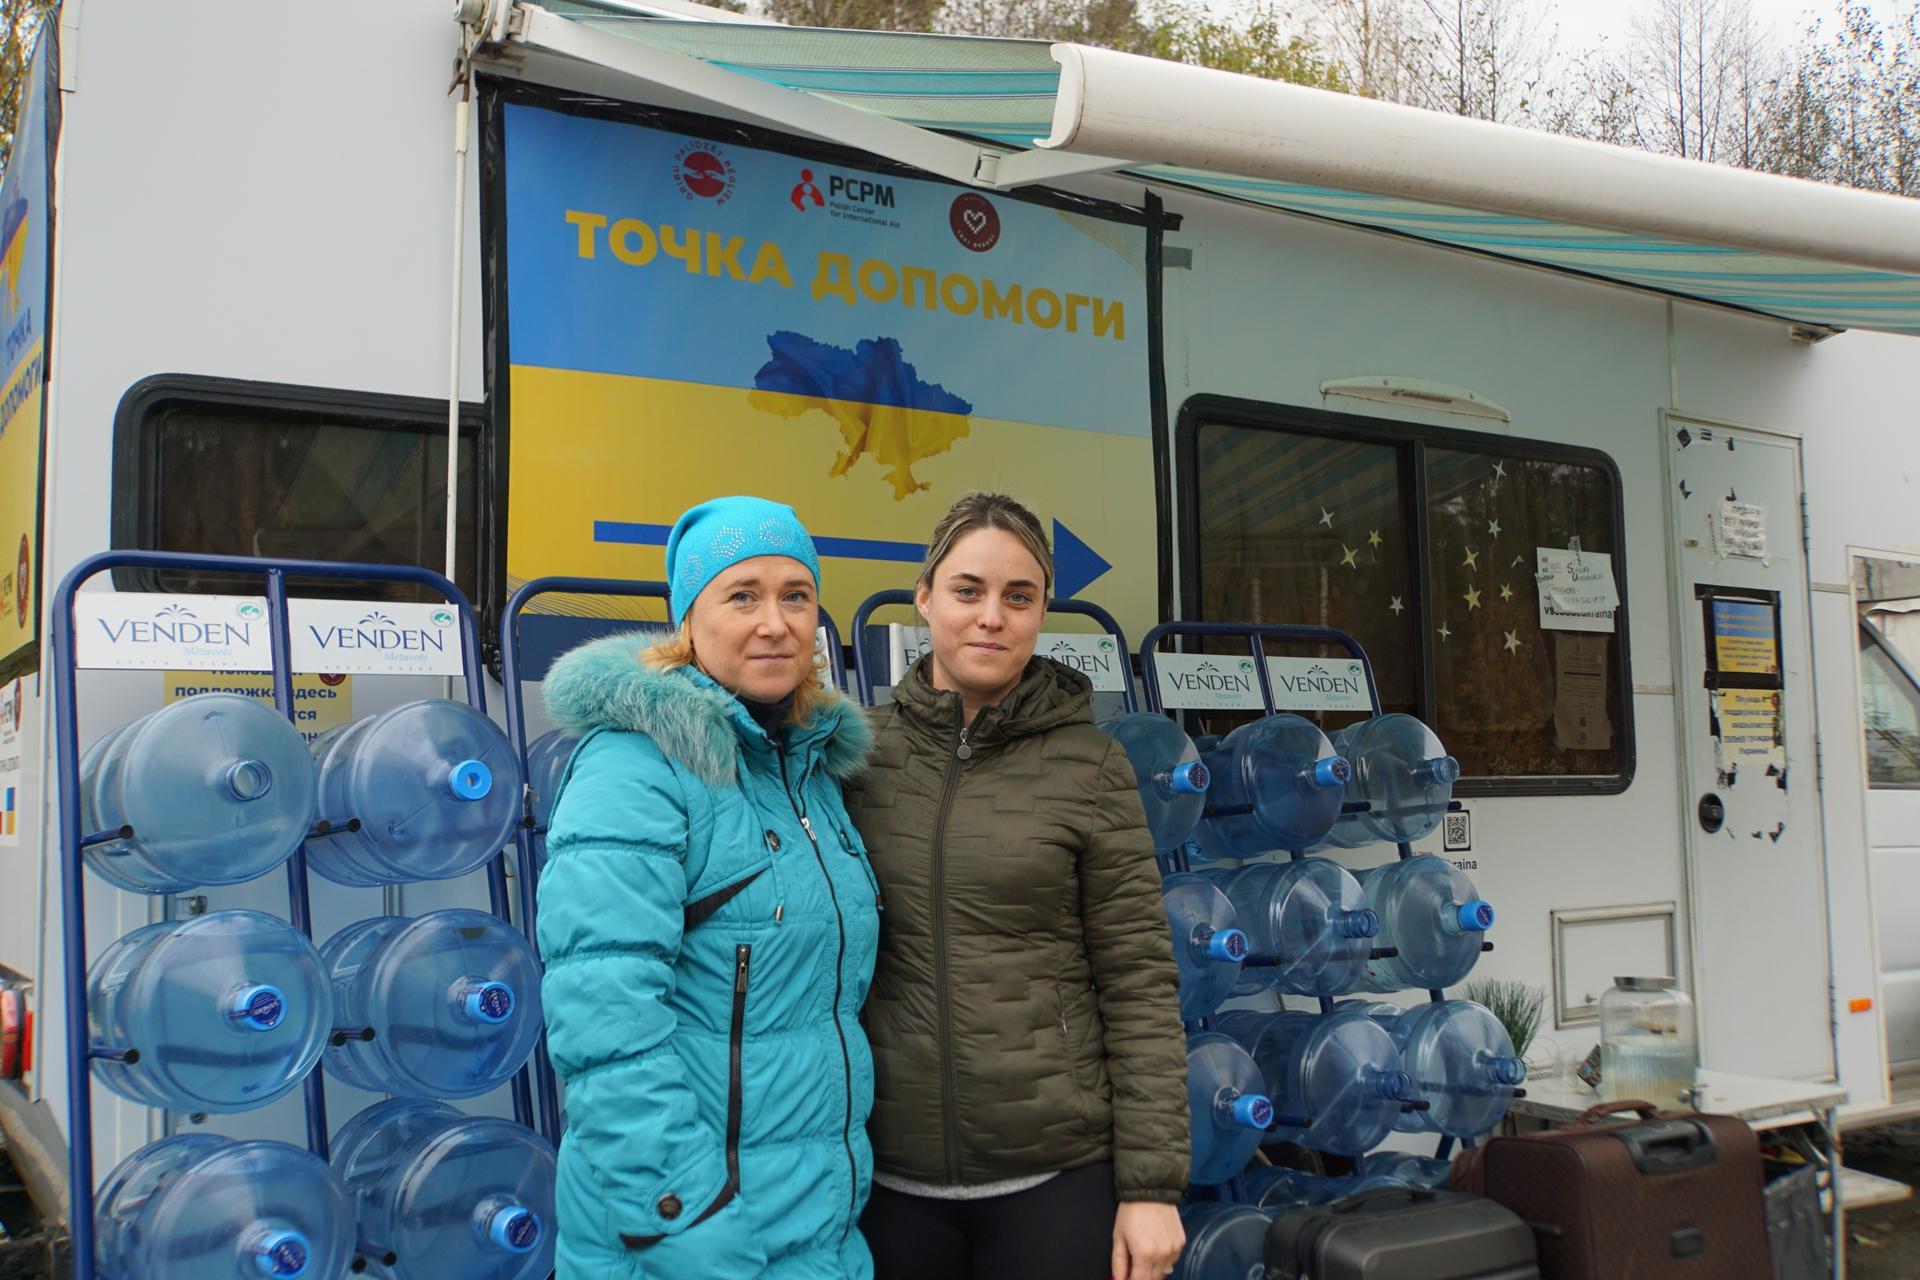 Two women wearing winter coats in front of water jugs